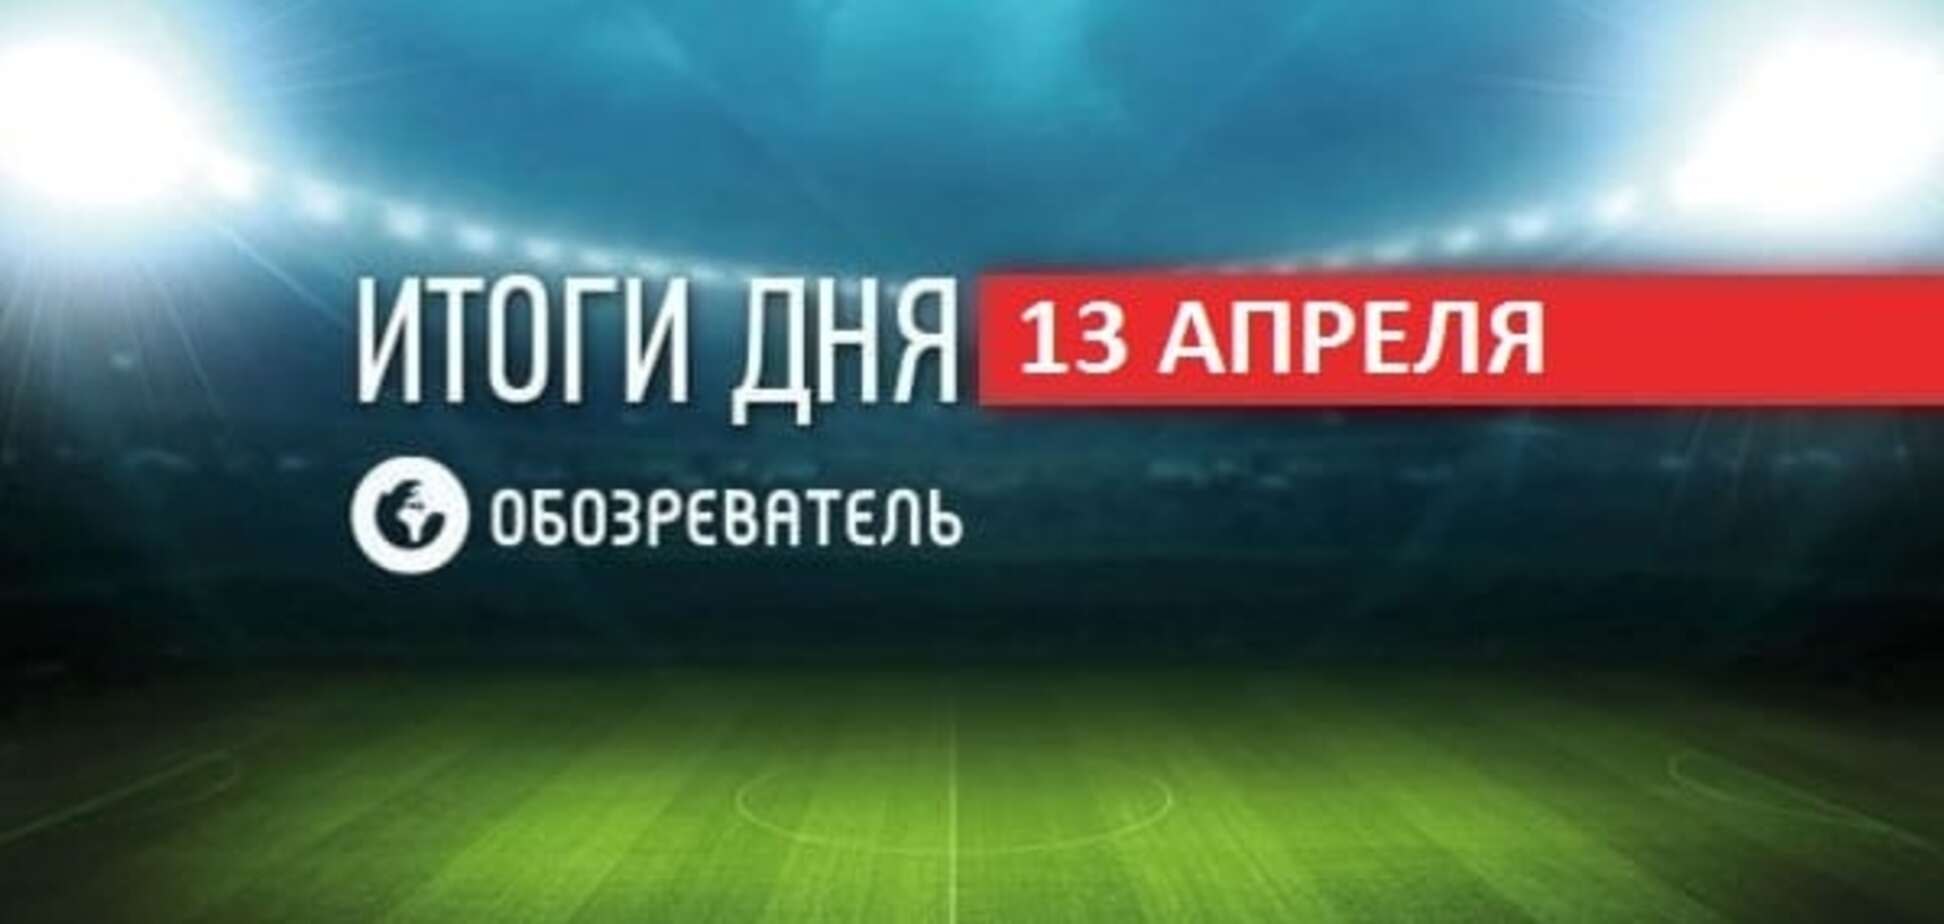 Послание москвичей форварду сборной Украины. Спортивные итоги 13 апреля